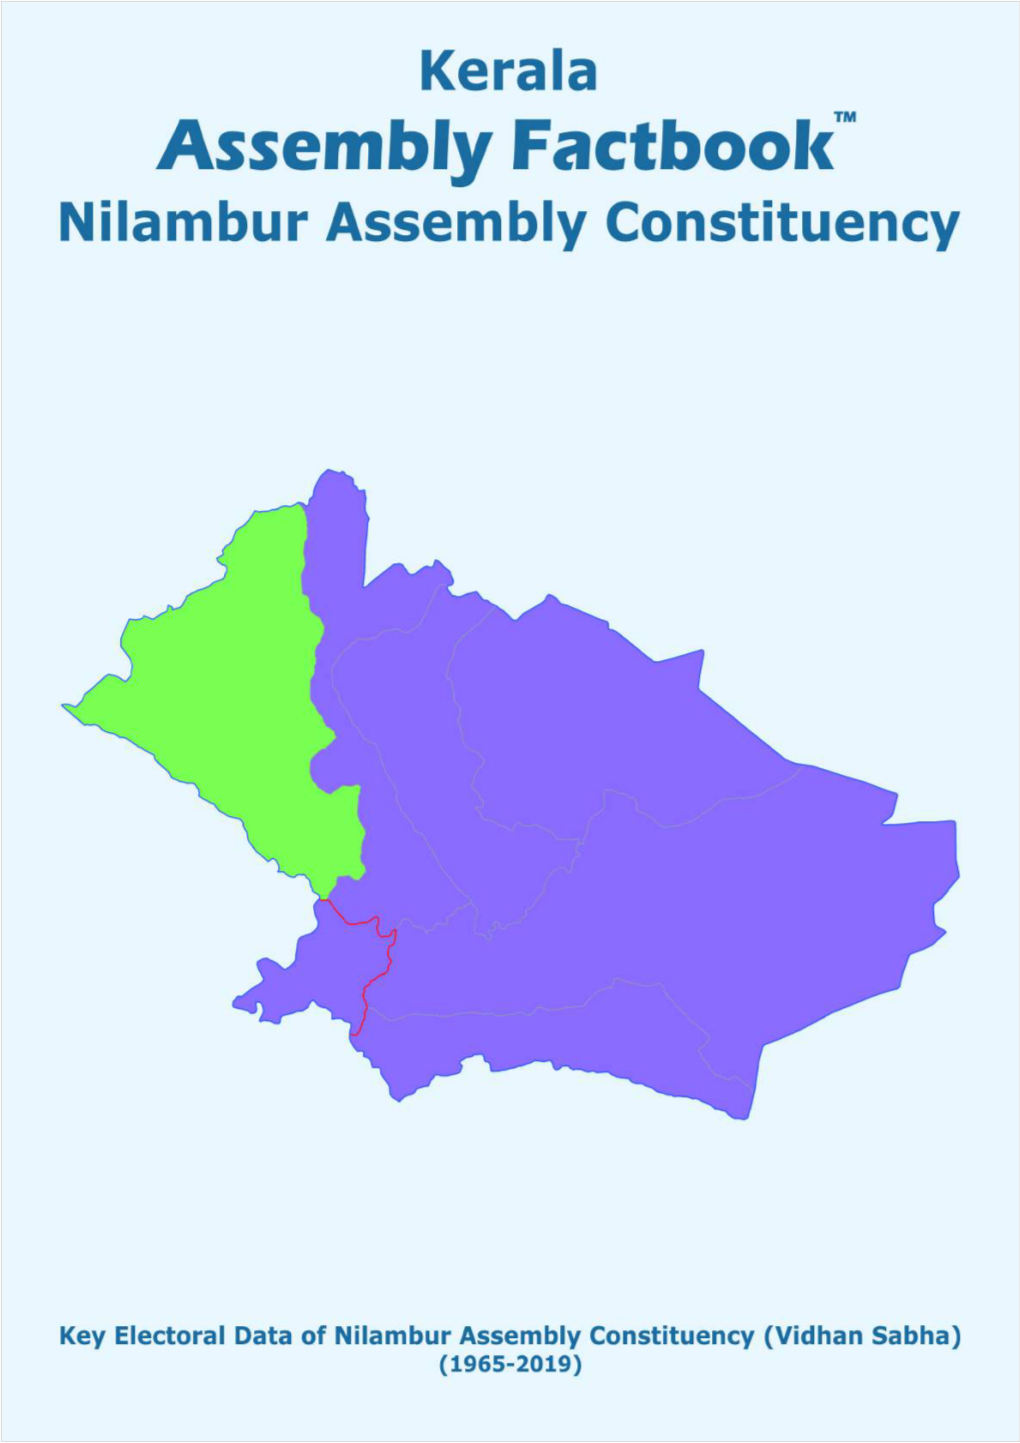 Nilambur Assembly Kerala Factbook | Key Electoral Data